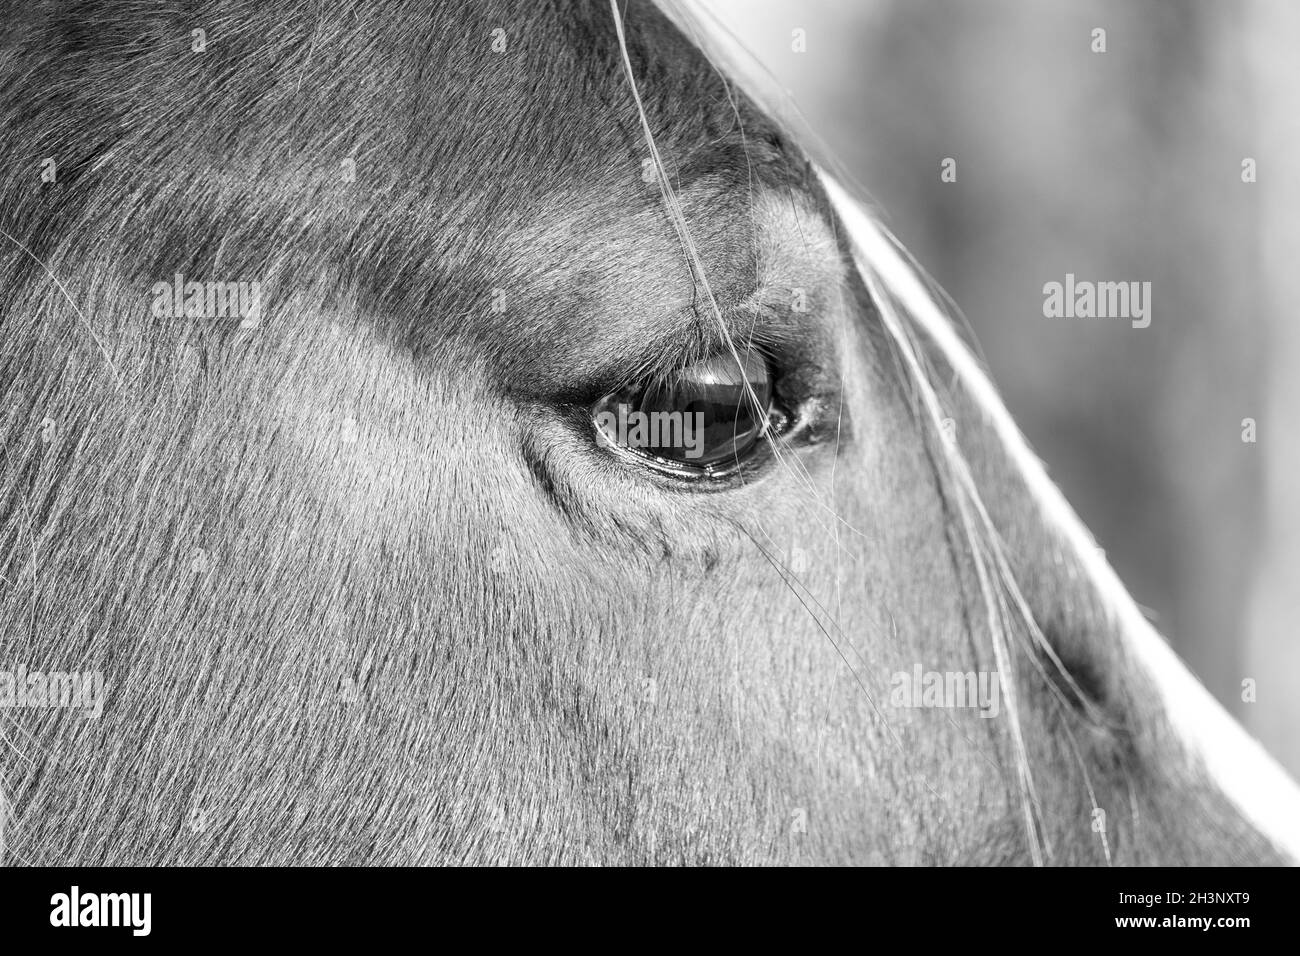 Ein Pferdeborträt mit Fokus auf ein einzelnes braunes Auge Stockfoto